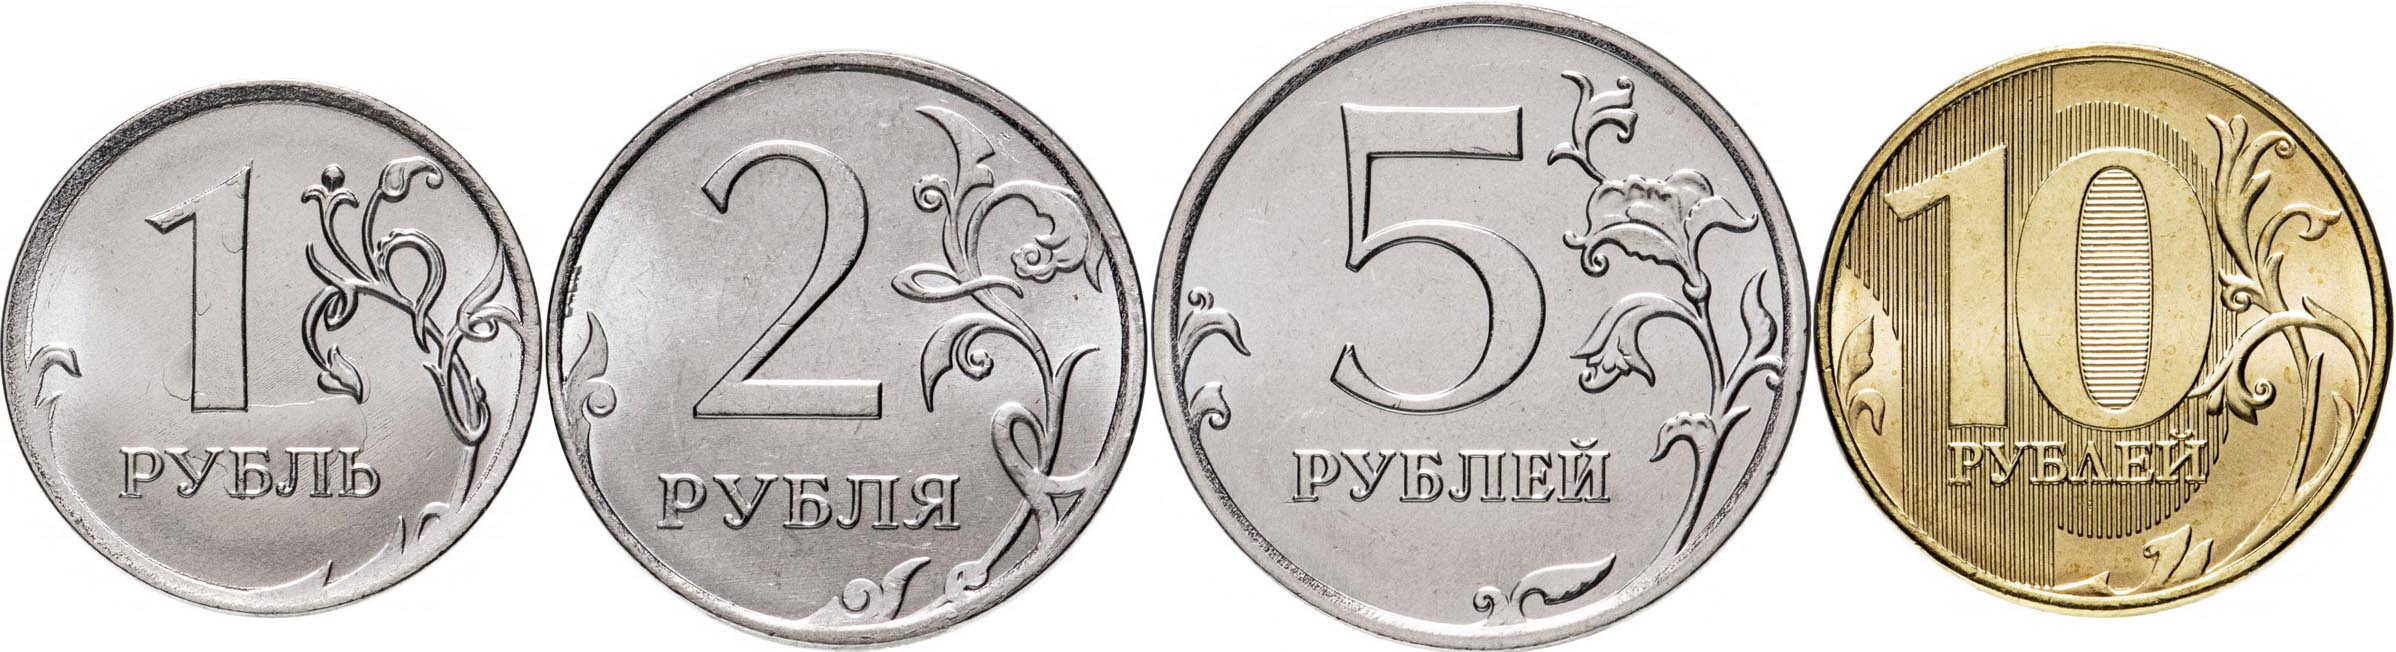 Рубль одной монетой 8. Монеты рубли. Монеты рубли на прозрачном фоне. 2 Рублевая монета 2020. Монеты России 2 рубль - 2020.